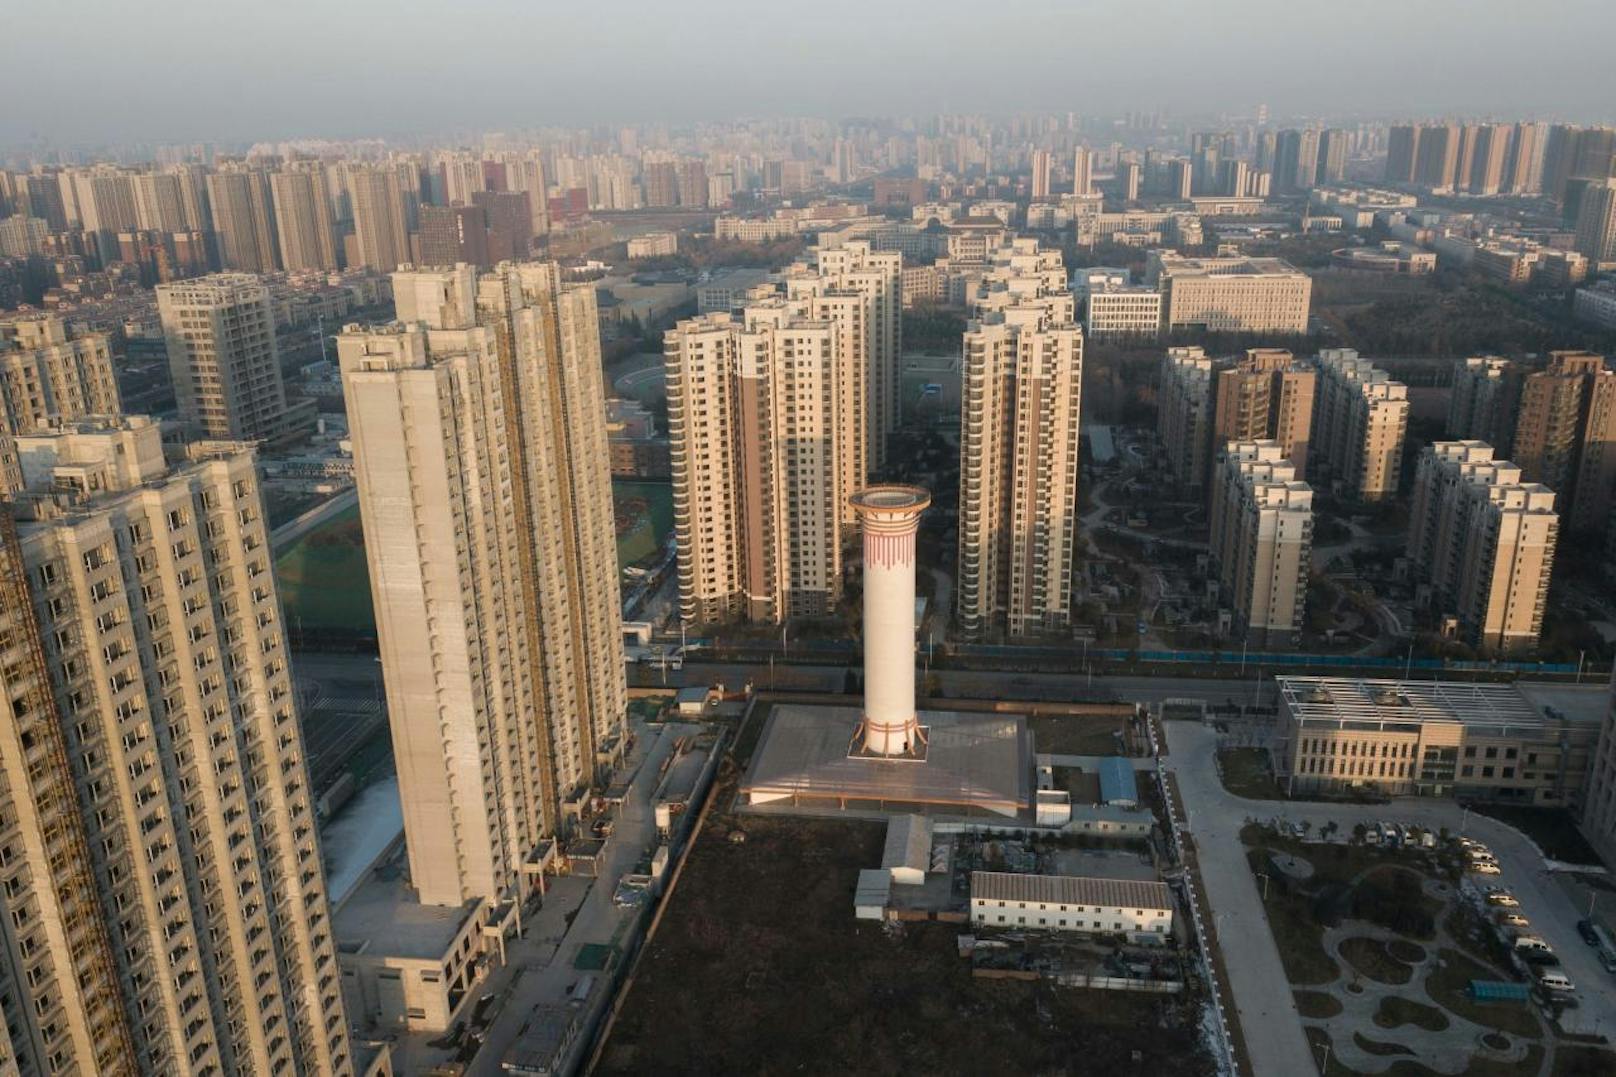 Der solarbetriebene Luftreiniger steht zwischen Hochhäusern am Stadtrand von Xi'an. Er kann zwischen fünf und 18 Millionen Kubikmeter Luft pro Tag reinigen, je nach Wetter, Jahreszeit und dem Niveau der Umweltbelastung.